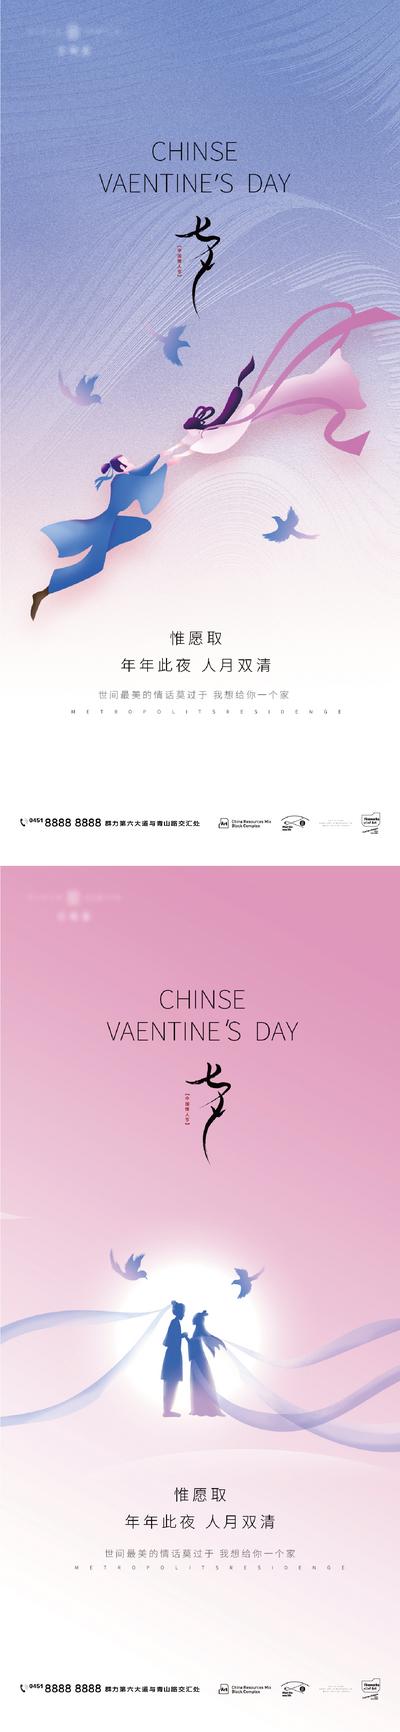 南门网 海报 地产 中国传统节日 七夕 情侣 插画